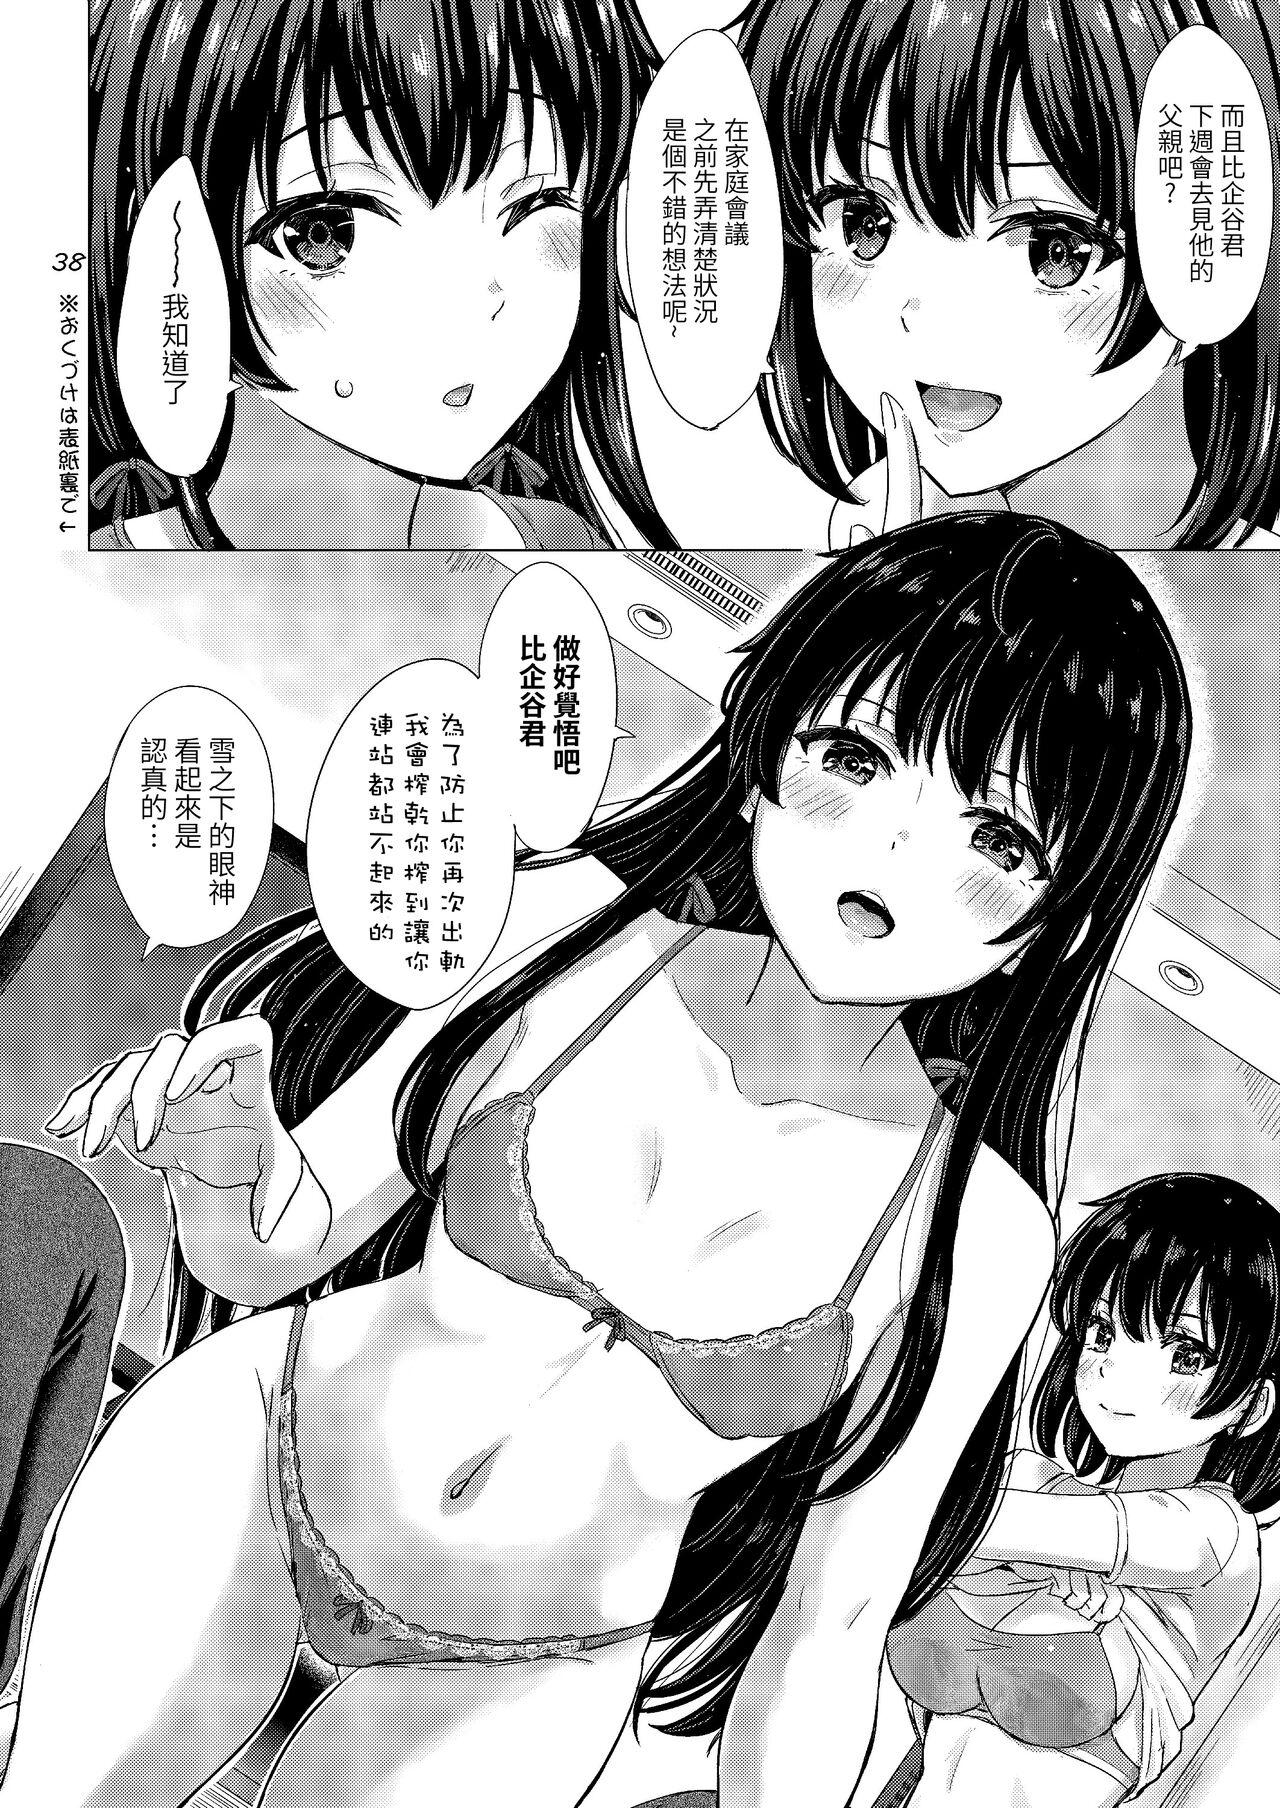 Yukinoshita Shimai to Iyarashii Futari no Himegoto. - The Yukinoshita sisters each have sex with hachiman. 37